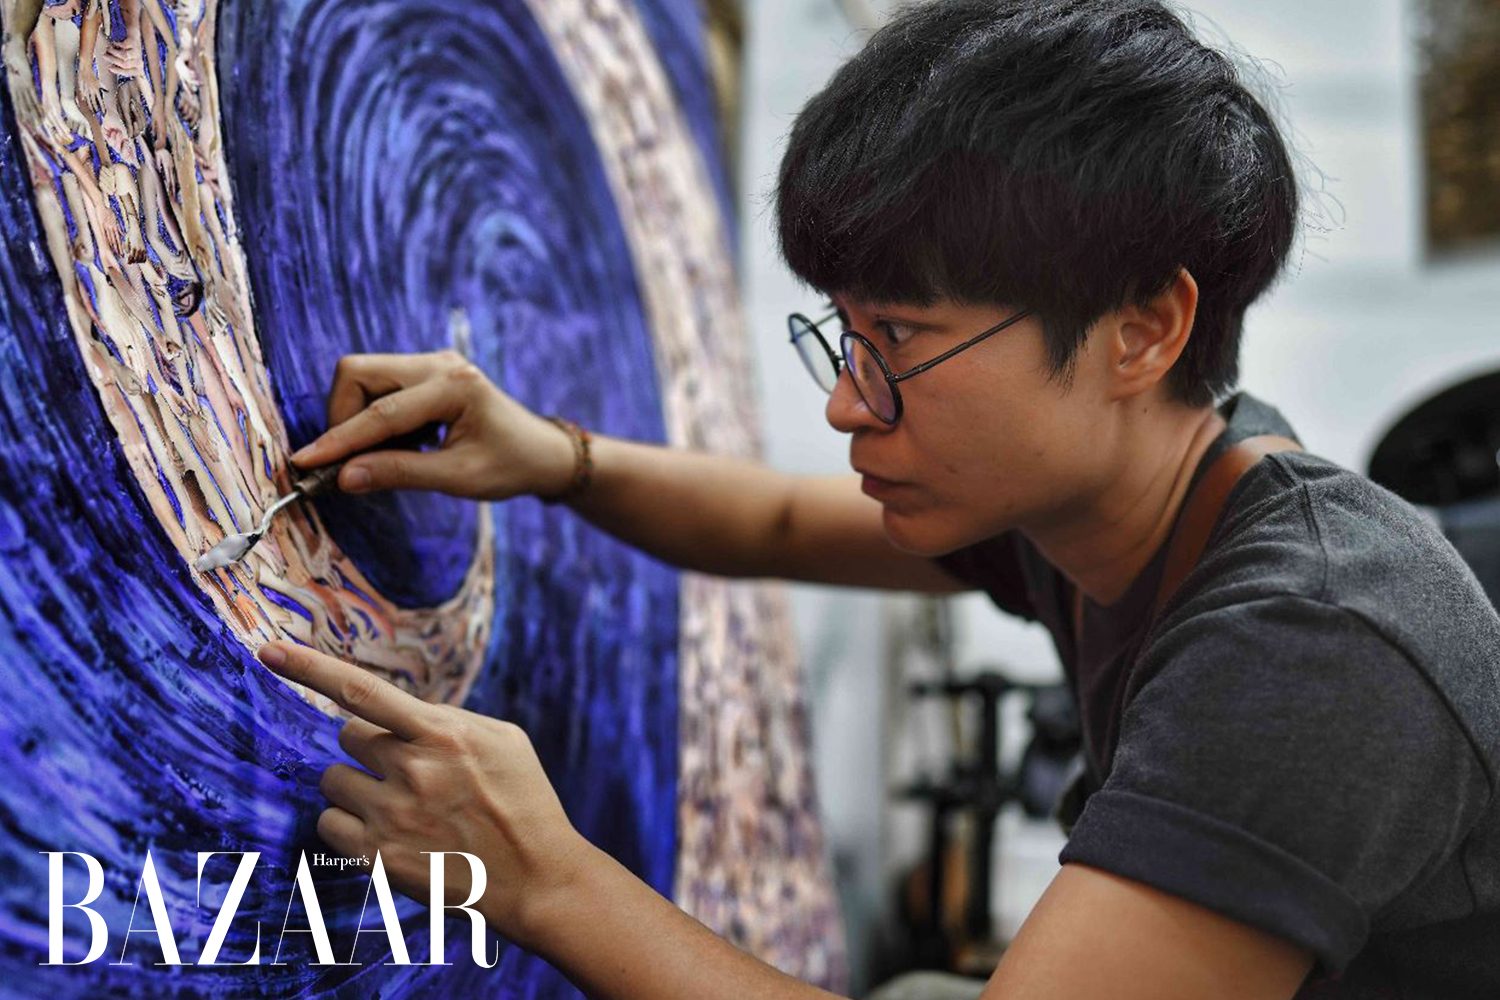 Harper's Bazaar_Triển lãm Introspection của nghệ sĩ Mzung Nguyễn_06